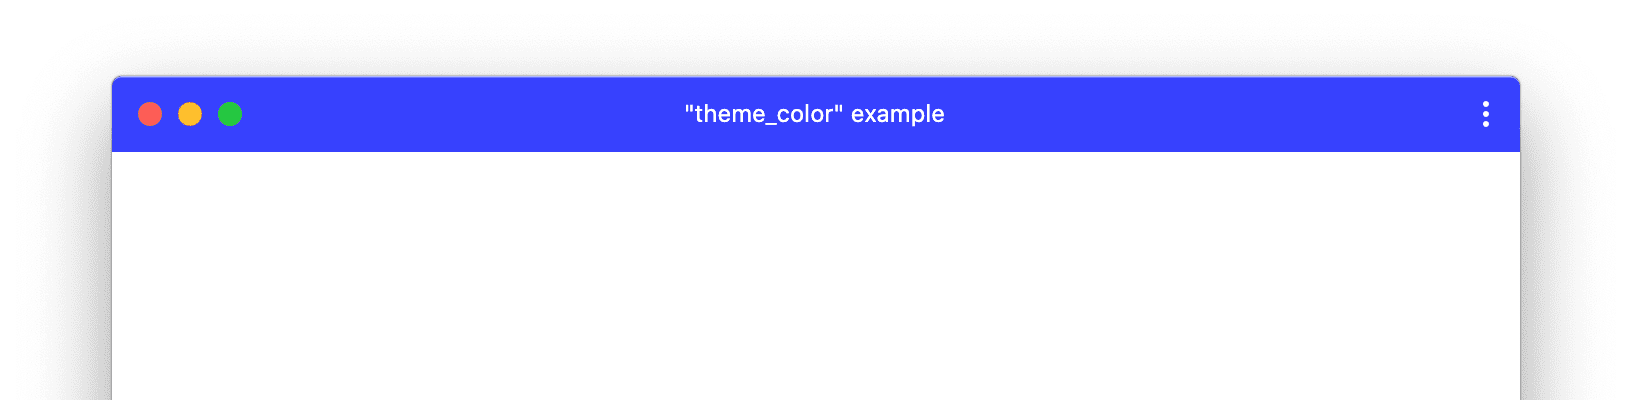 कस्टम थीम_color वाली PWA विंडो का उदाहरण.